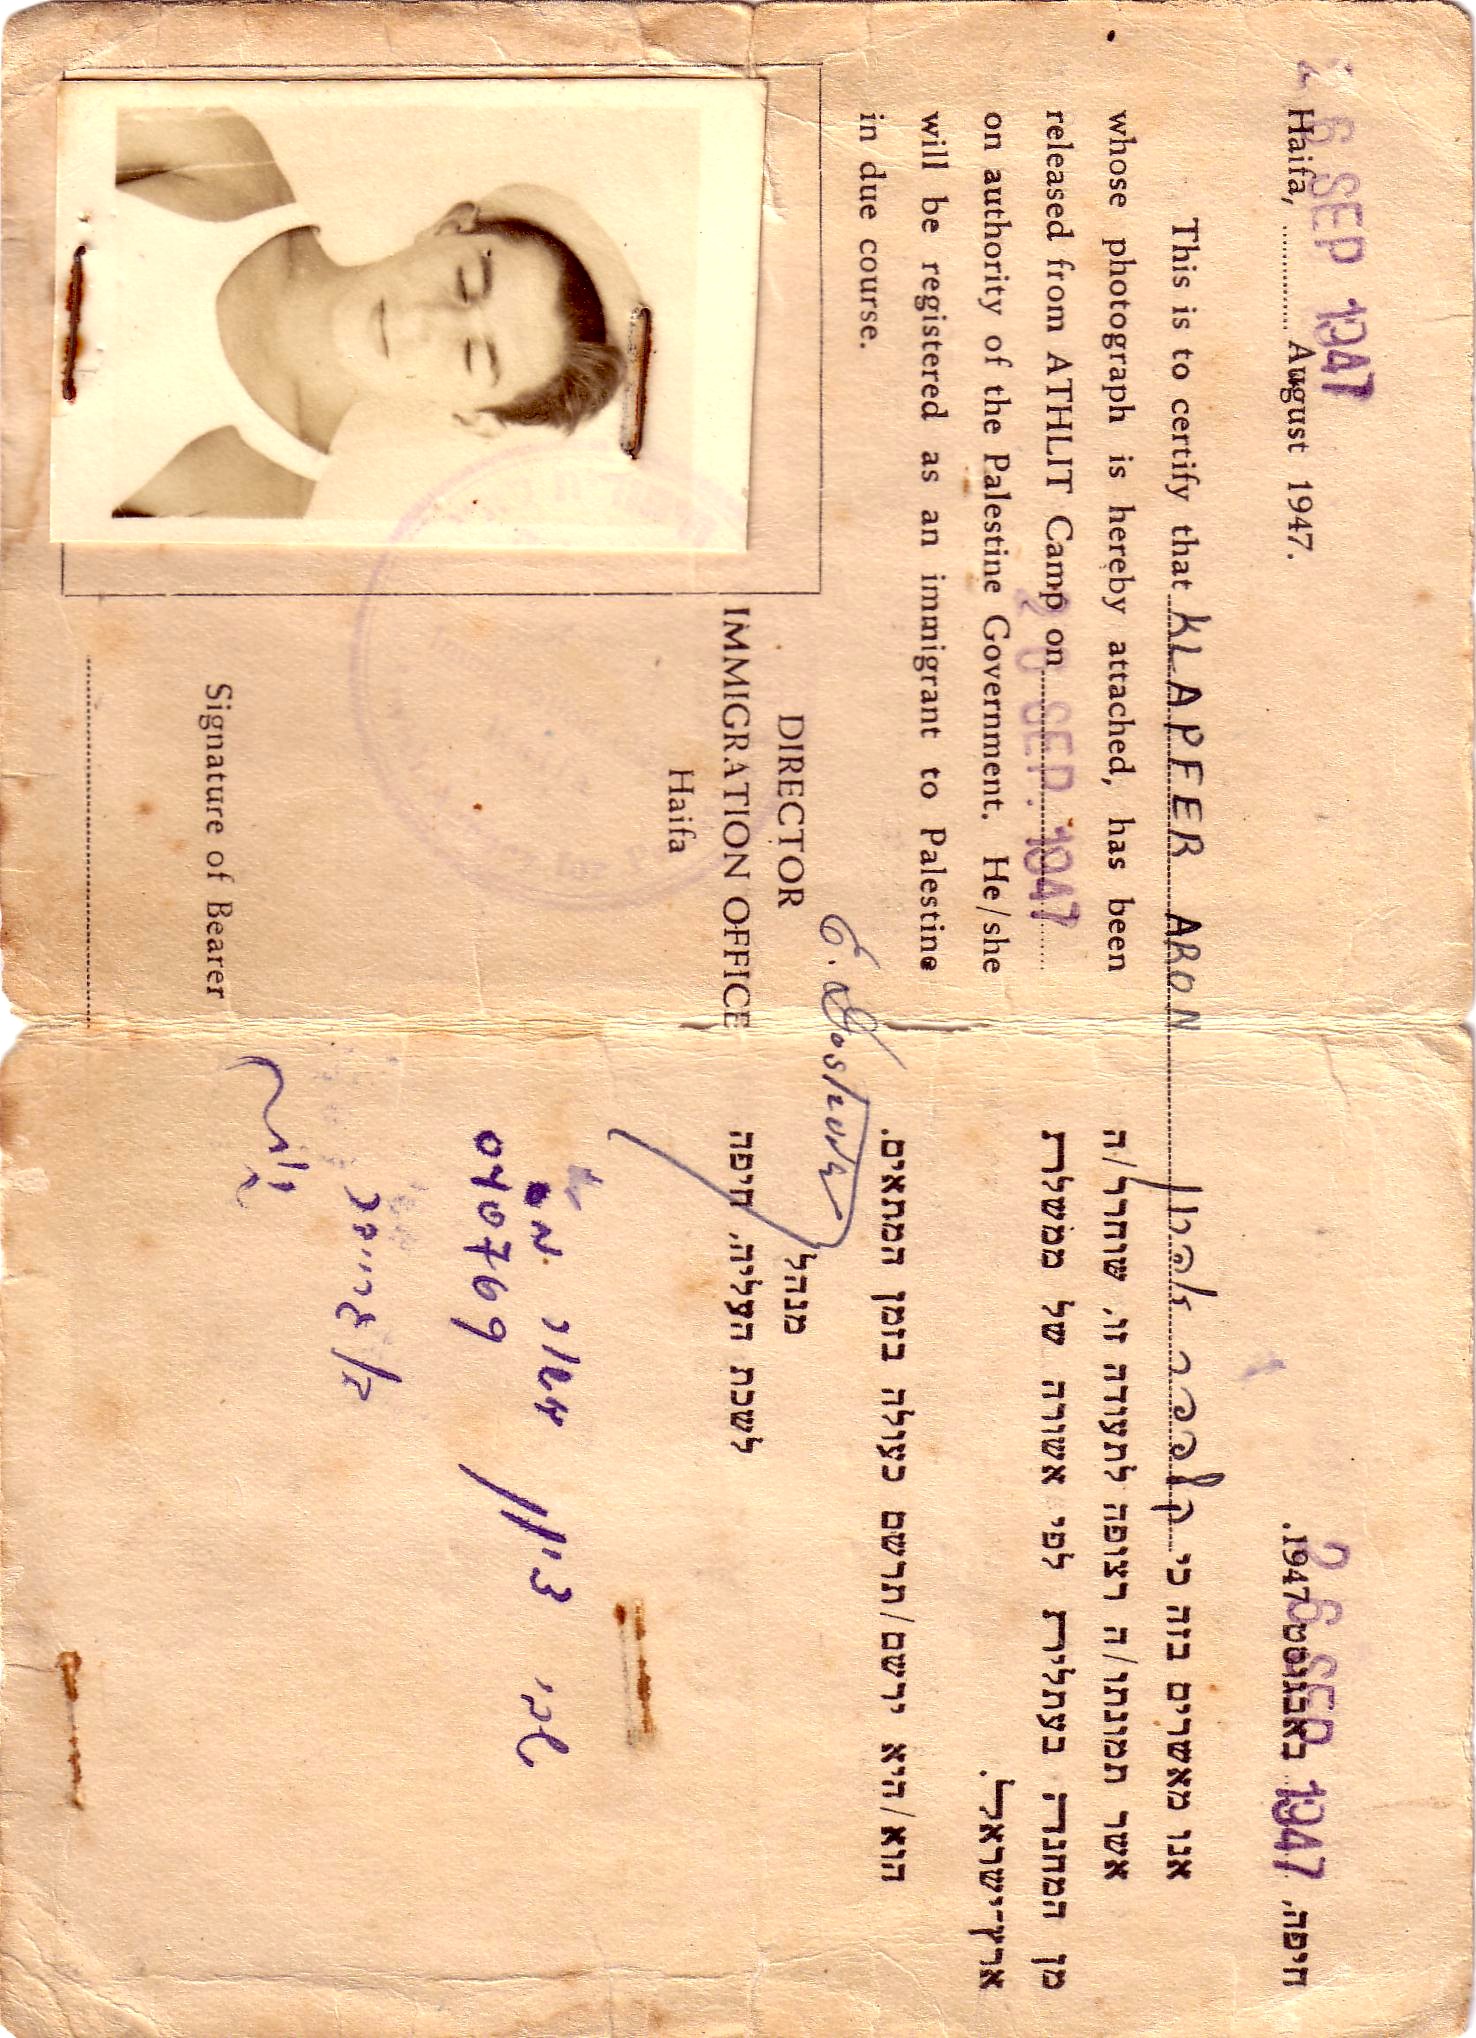 Bescheinigung über Aharons Entlassung aus dem Internierungslager Atlit im Jahr 1947.